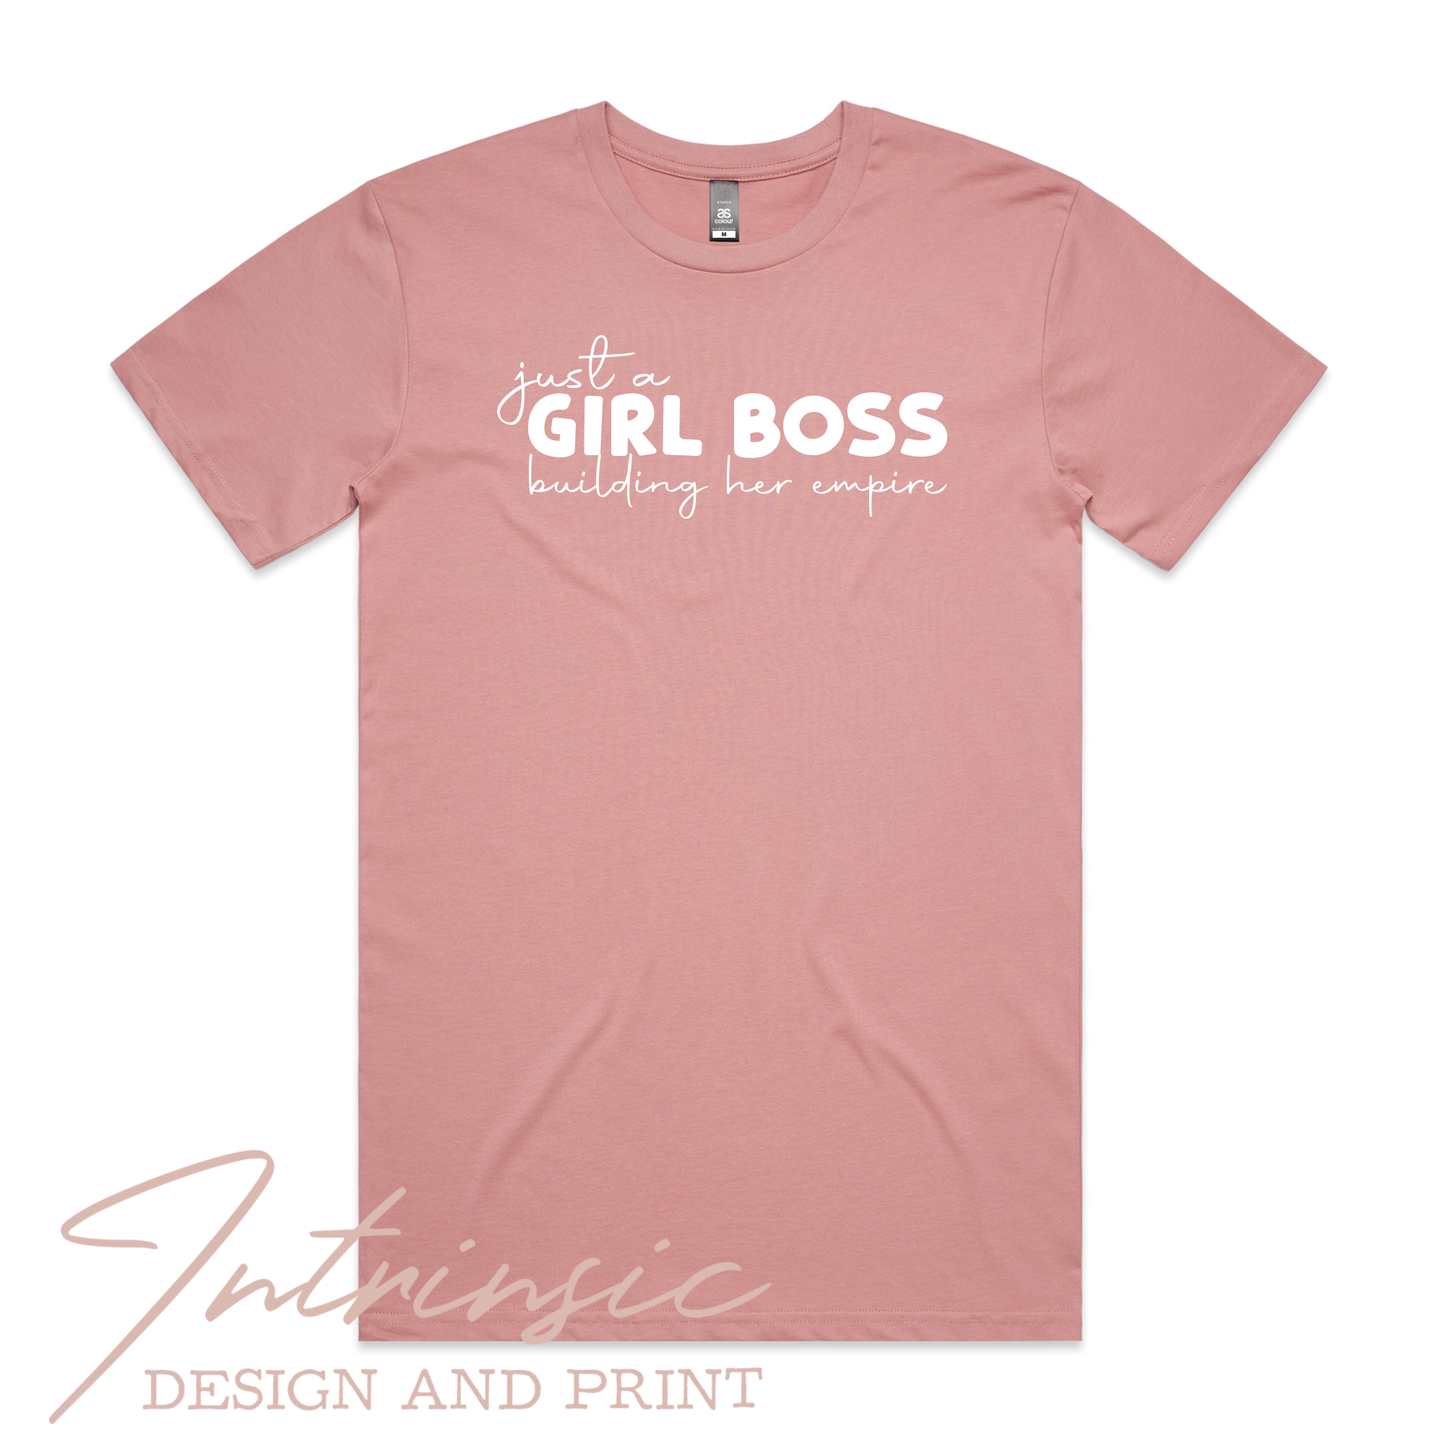 Girl boss - unisex